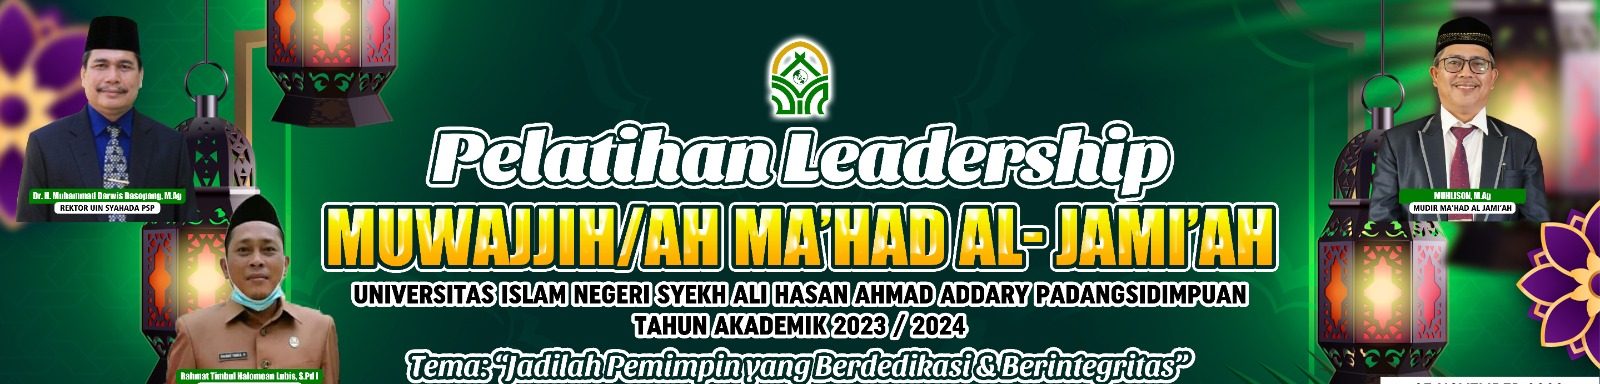 PELATIHAN LEADERSHIP MUWAJJIH/AH MA’HAD AL-JAMI’AH UIN SYEKH ALI HASAN AHMAD ADDARY PADANGSIDIMPUAN. T.A 2023-2024